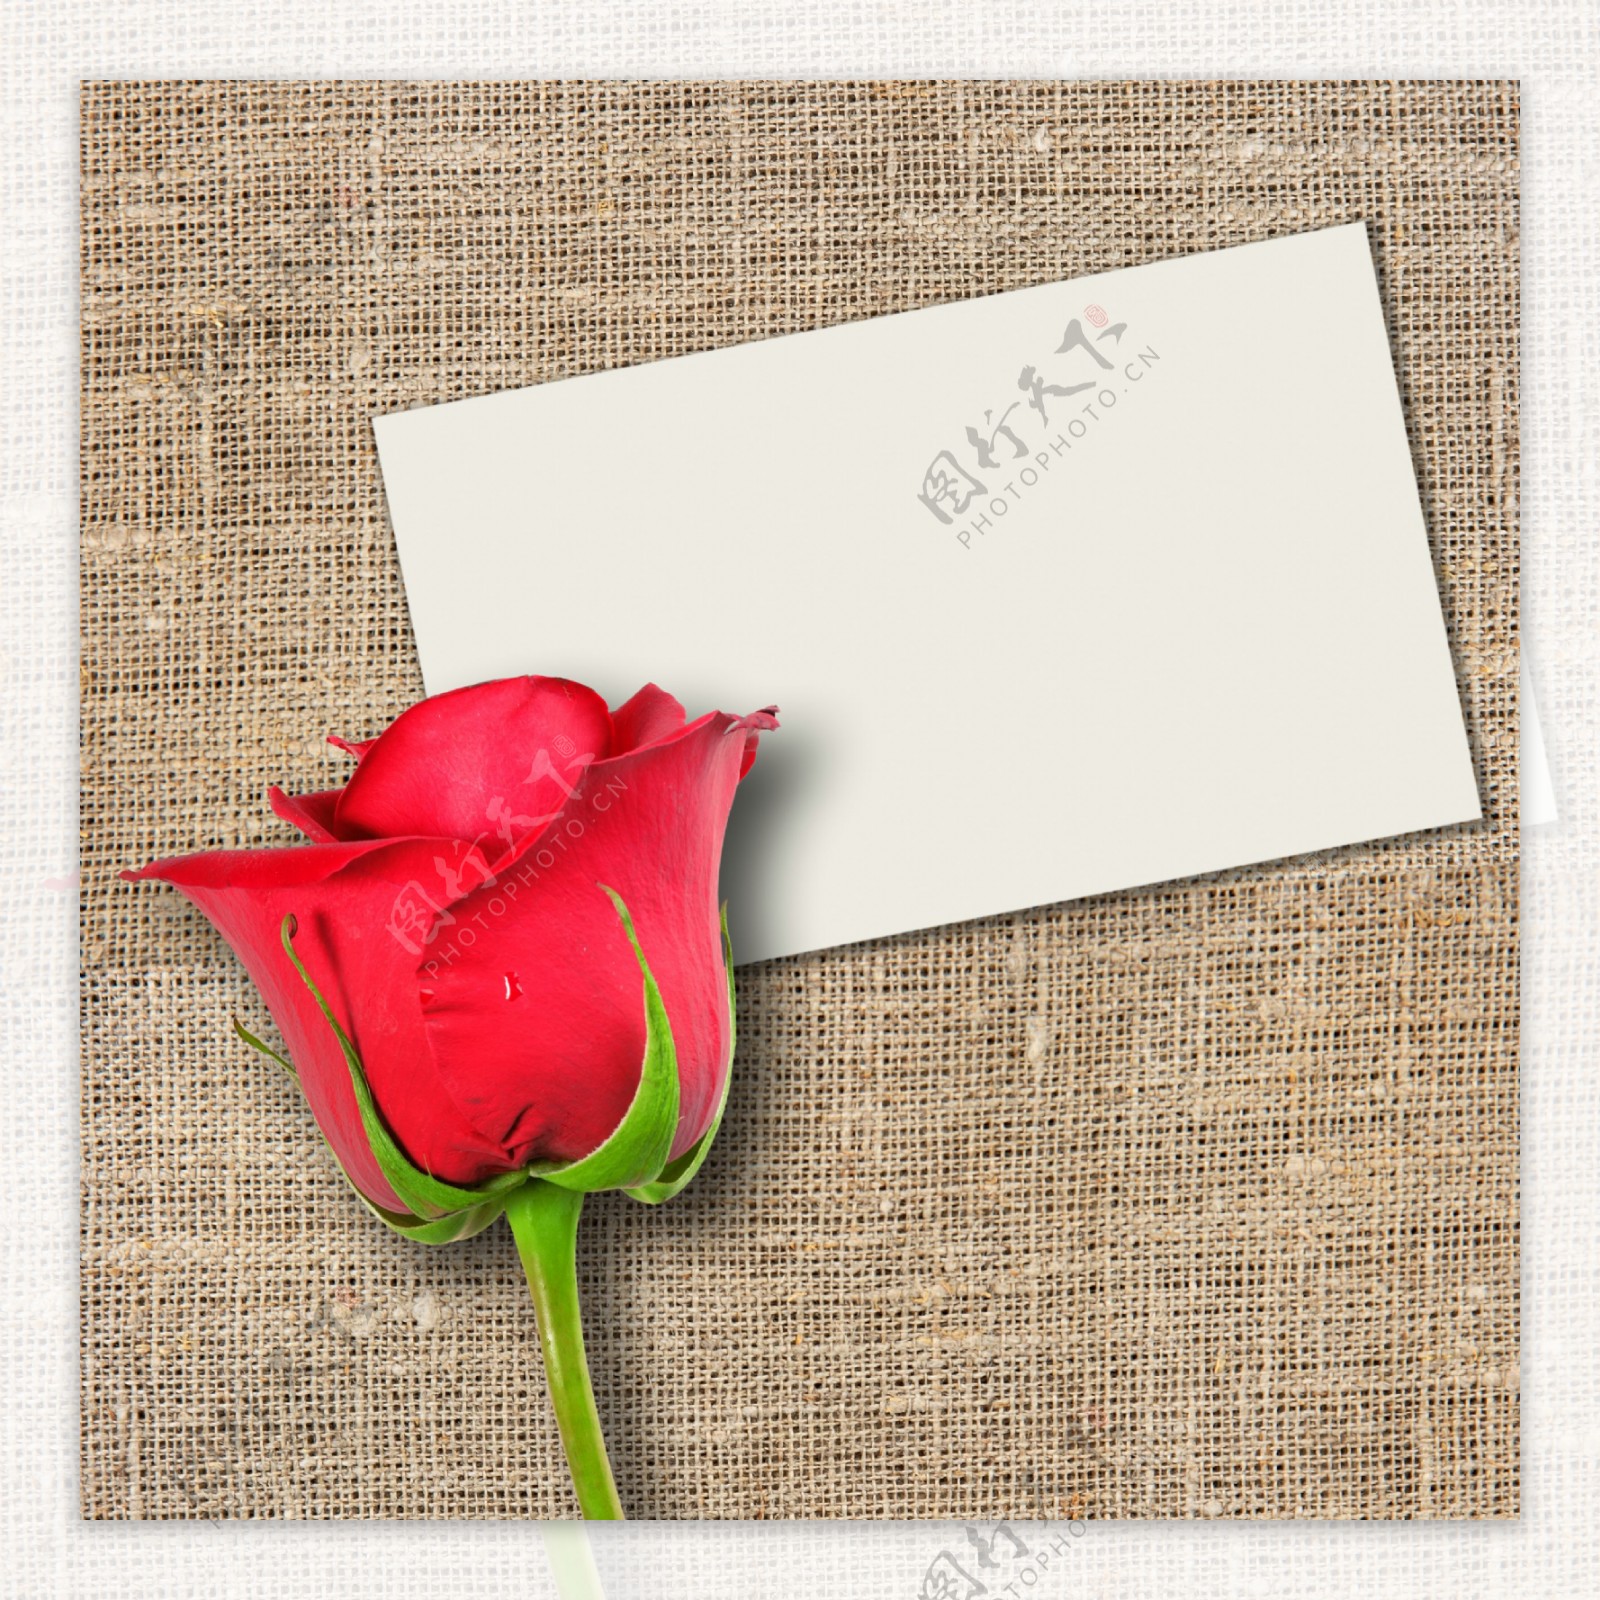 麻布面上的红玫瑰和卡片图片